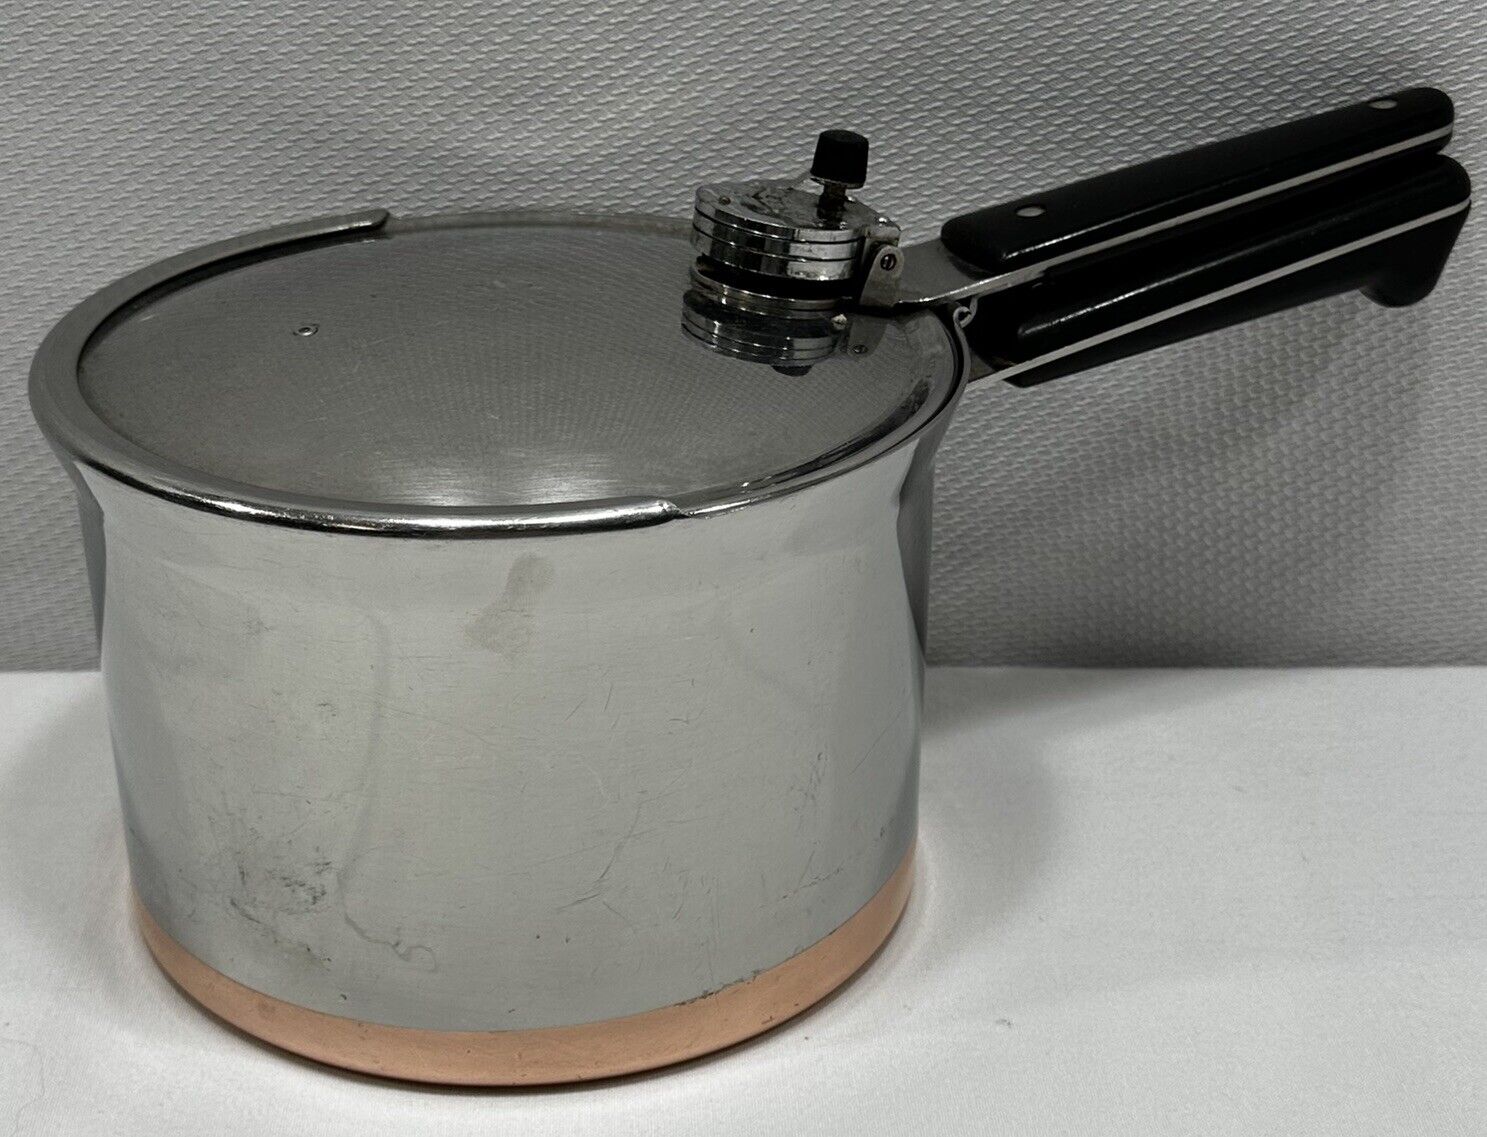 Vintage Revere Ware Copper Clad Stainless 4 Qt Pressure Cooker Read Description